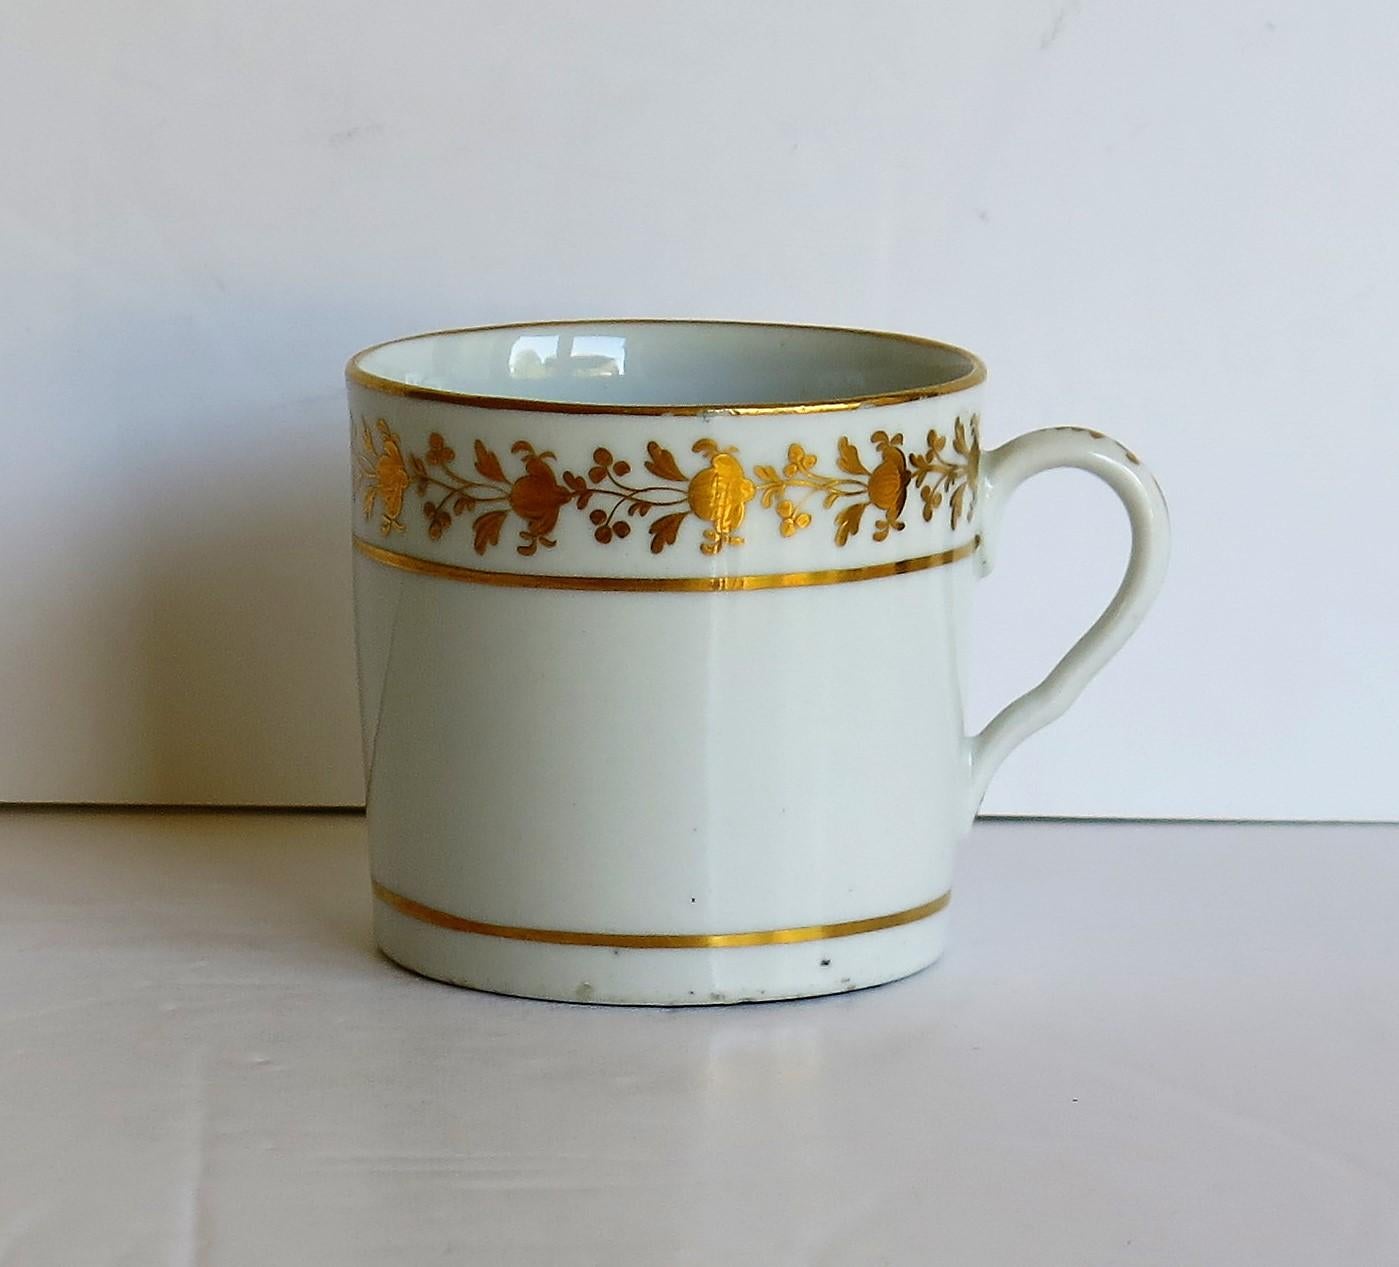 Es handelt sich um eine Kaffeedose von guter Qualität, die wir den Coalport Porcelain Works, Shropshire, England, zuschreiben, die während der John Rose Periode der George 111 Jahre, ca. 1805-1810, hergestellt wurde.

Die Kaffeedose ist nominell